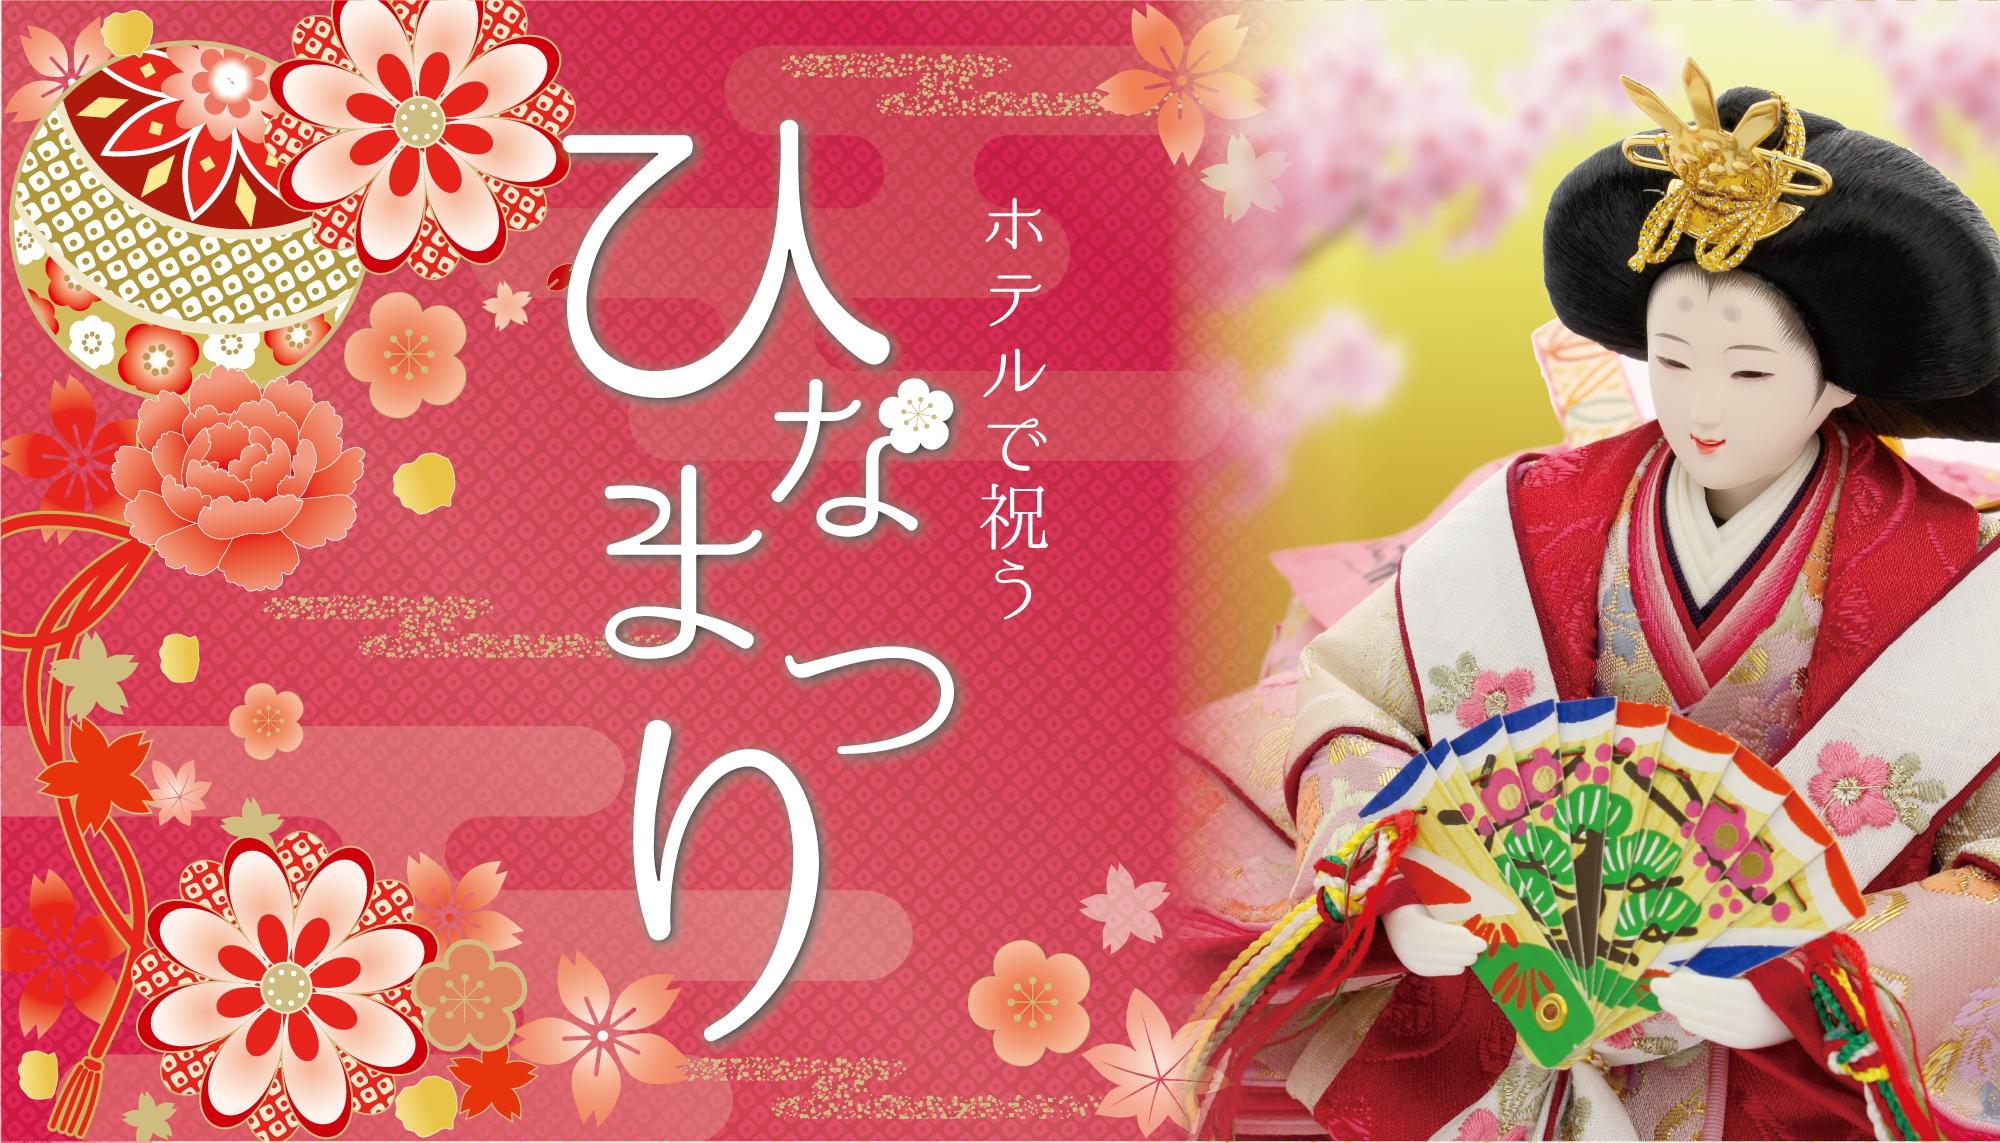 日本文化：盂兰盆节到底是不是鬼节？聊聊茄子和黄瓜的故事 | All About Japan